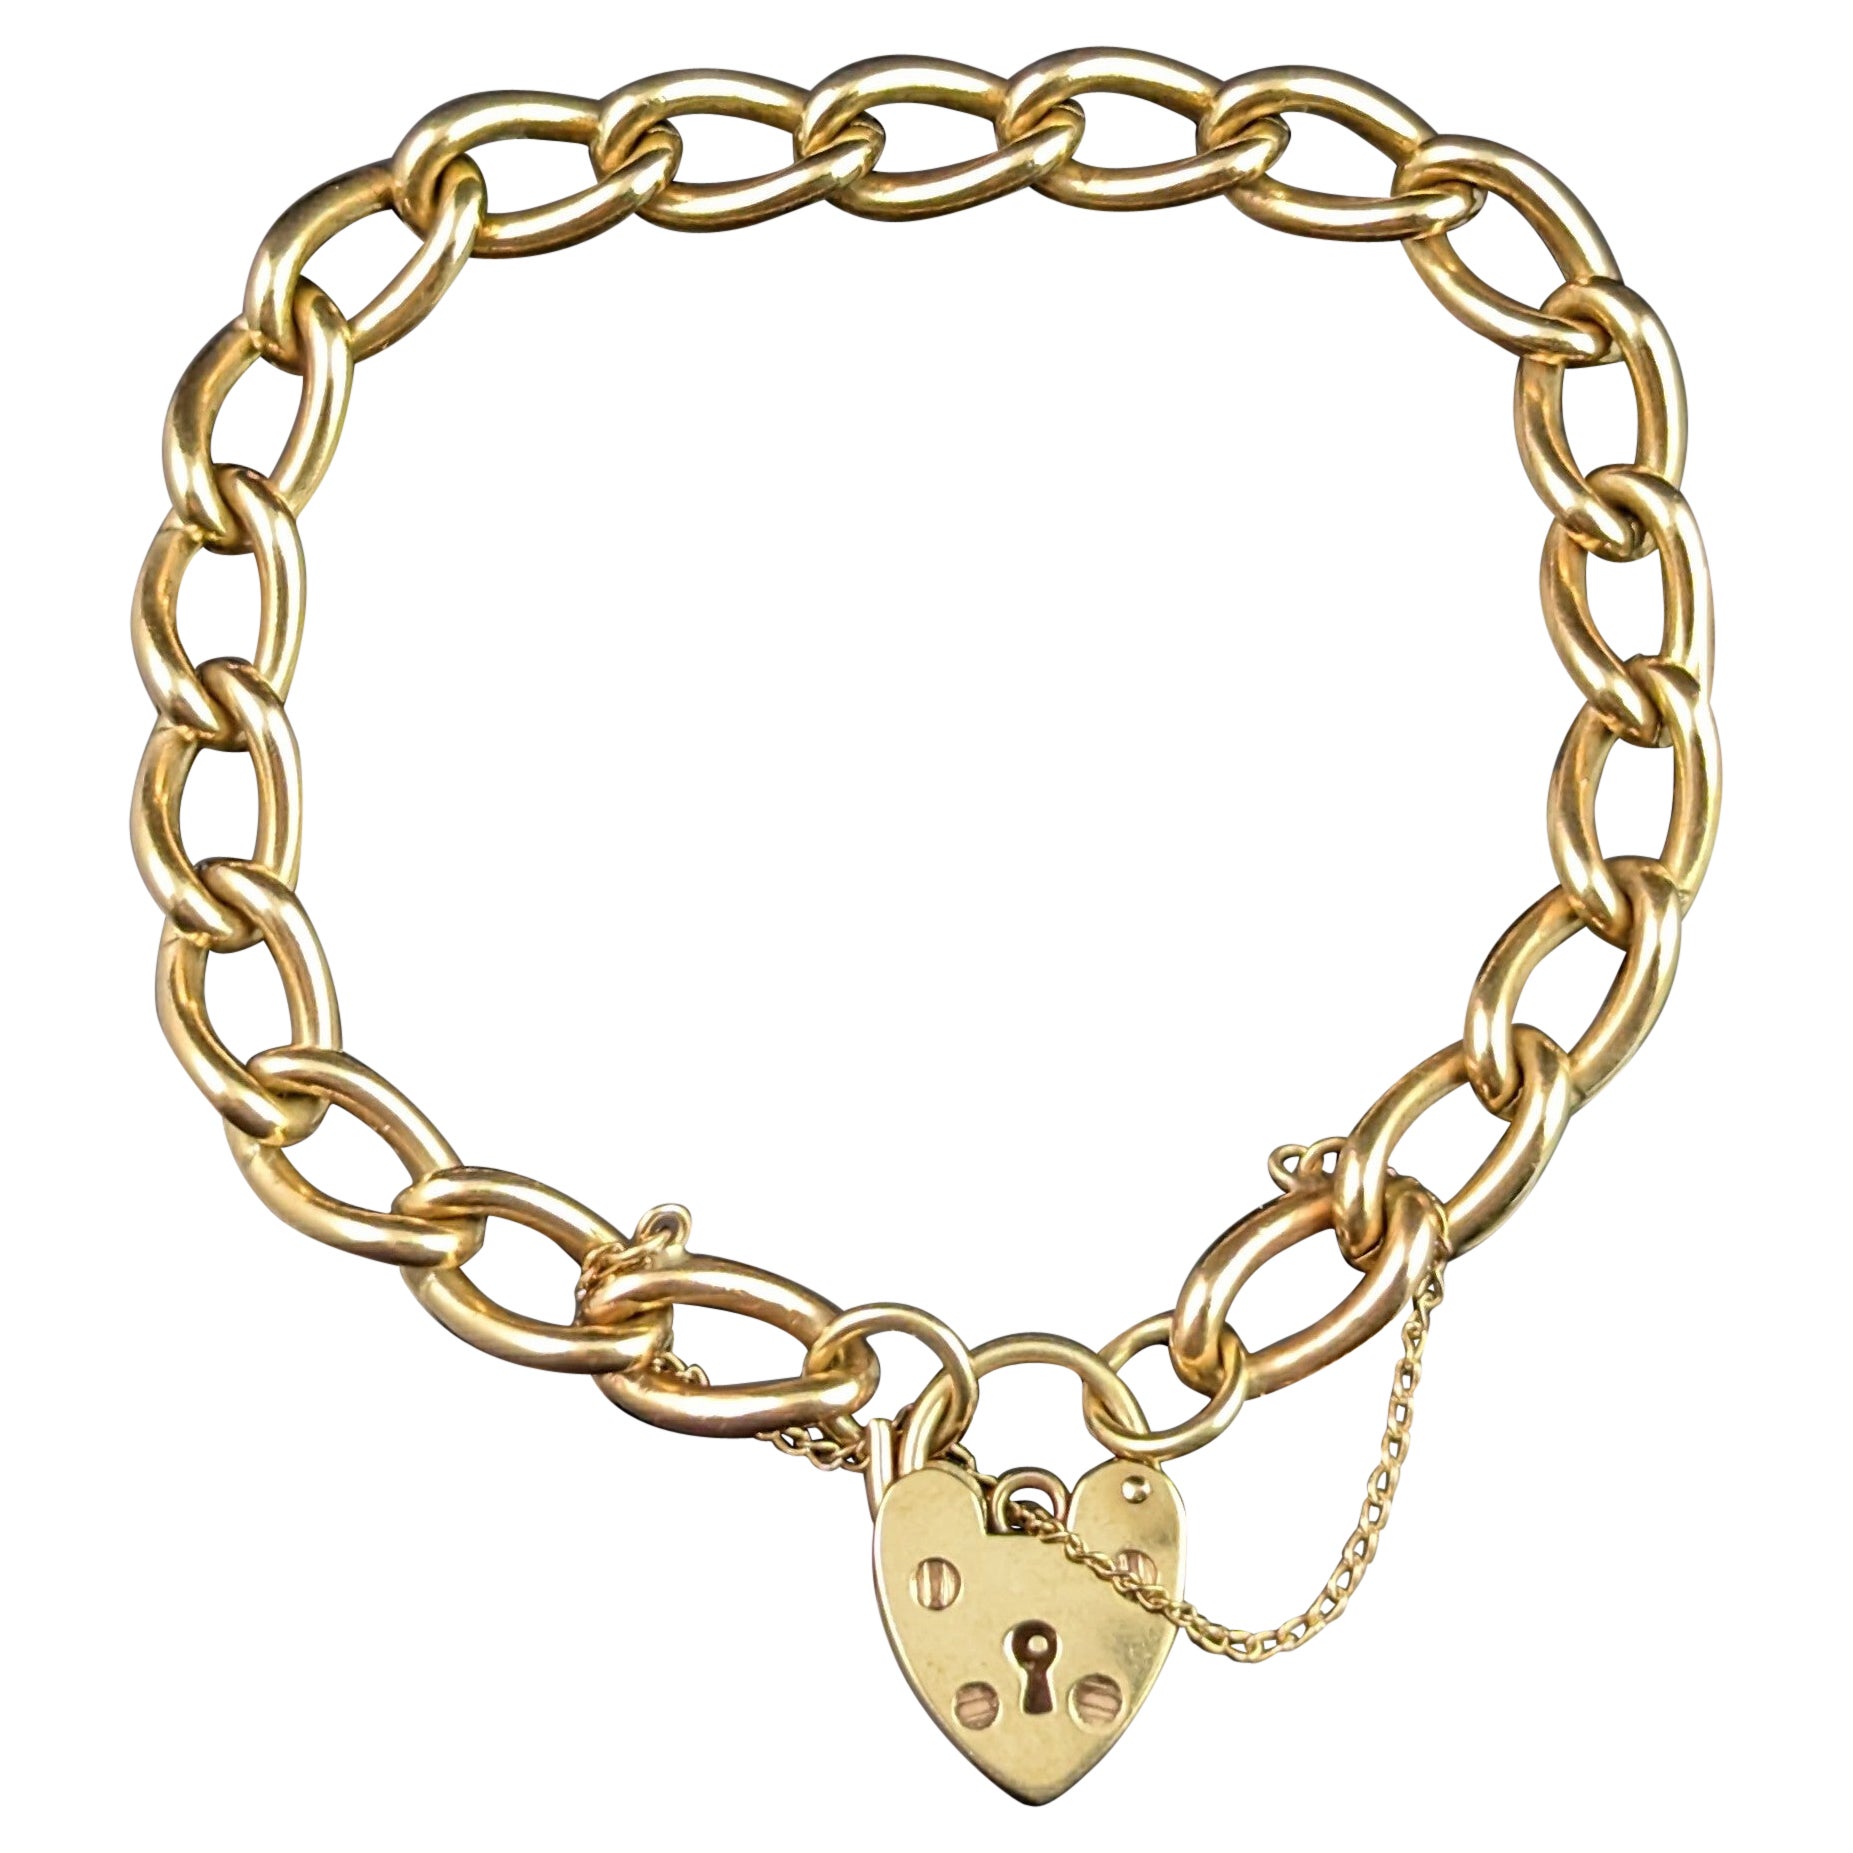 Vintage 9k Gold Curb Link Bracelet, Heart Padlock Clasp